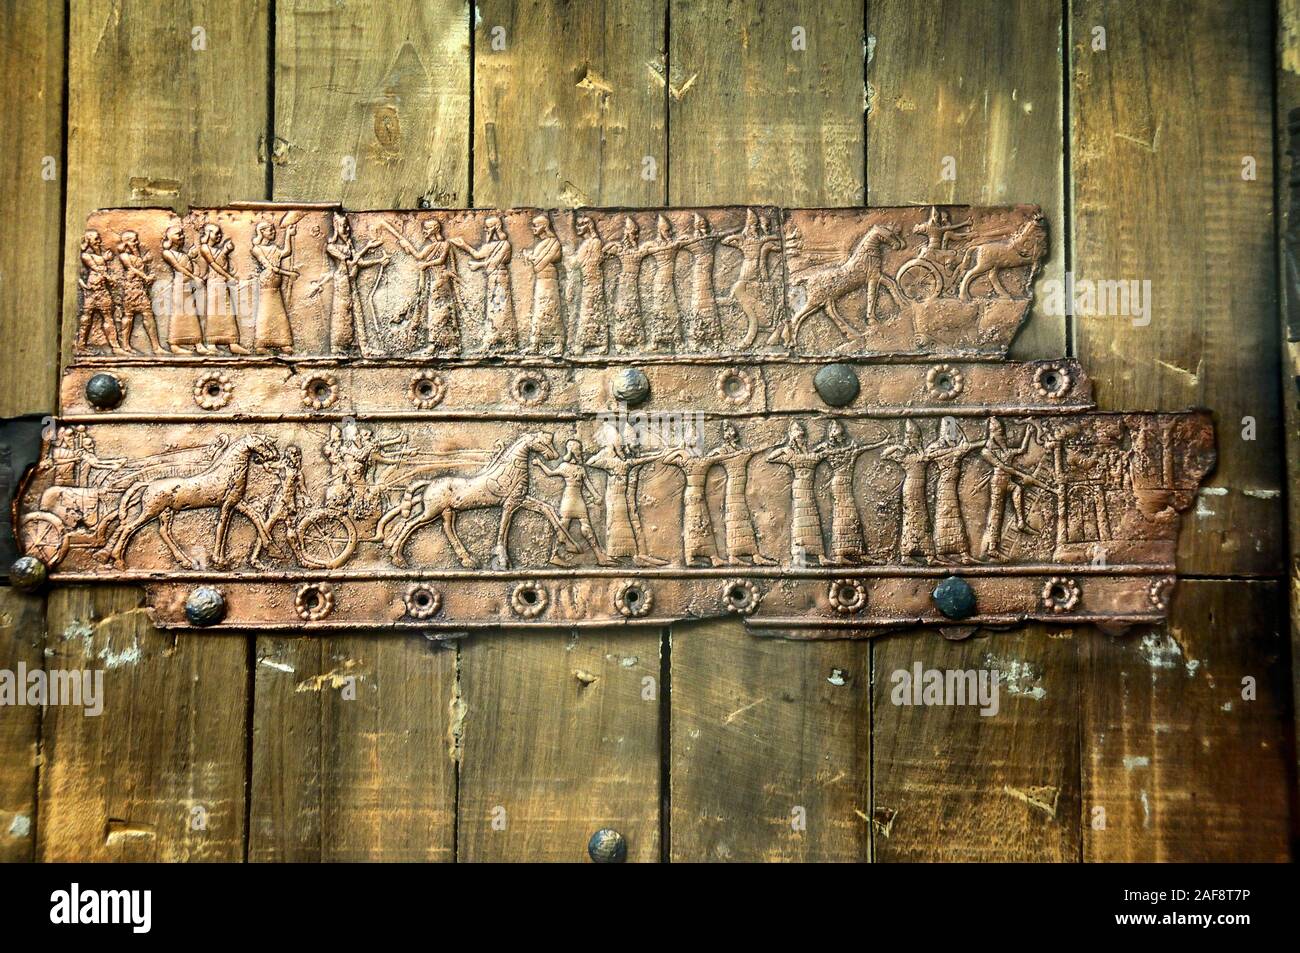 Détail d'une porte d'assyrien. Qala't Sharqat. 1243-824 BC. Musée Archéologique d'Istanbul, Turquie Banque D'Images